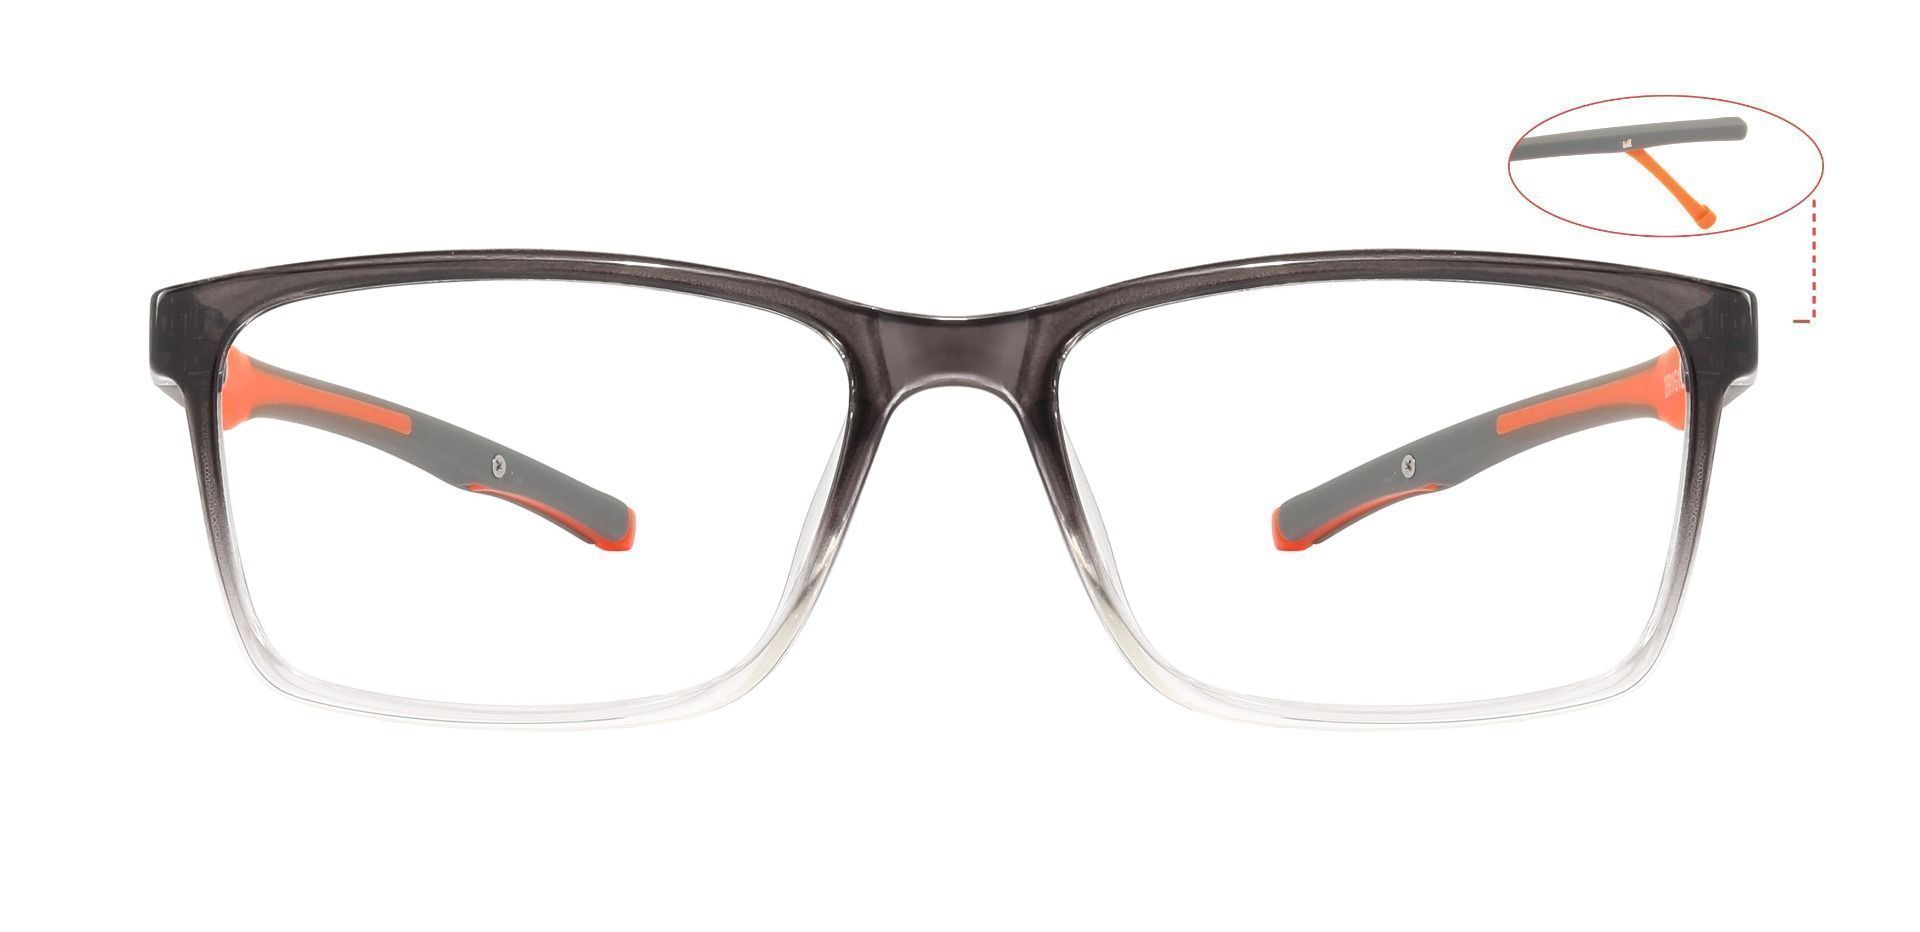 Lowell Rectangle Prescription Glasses - Gray